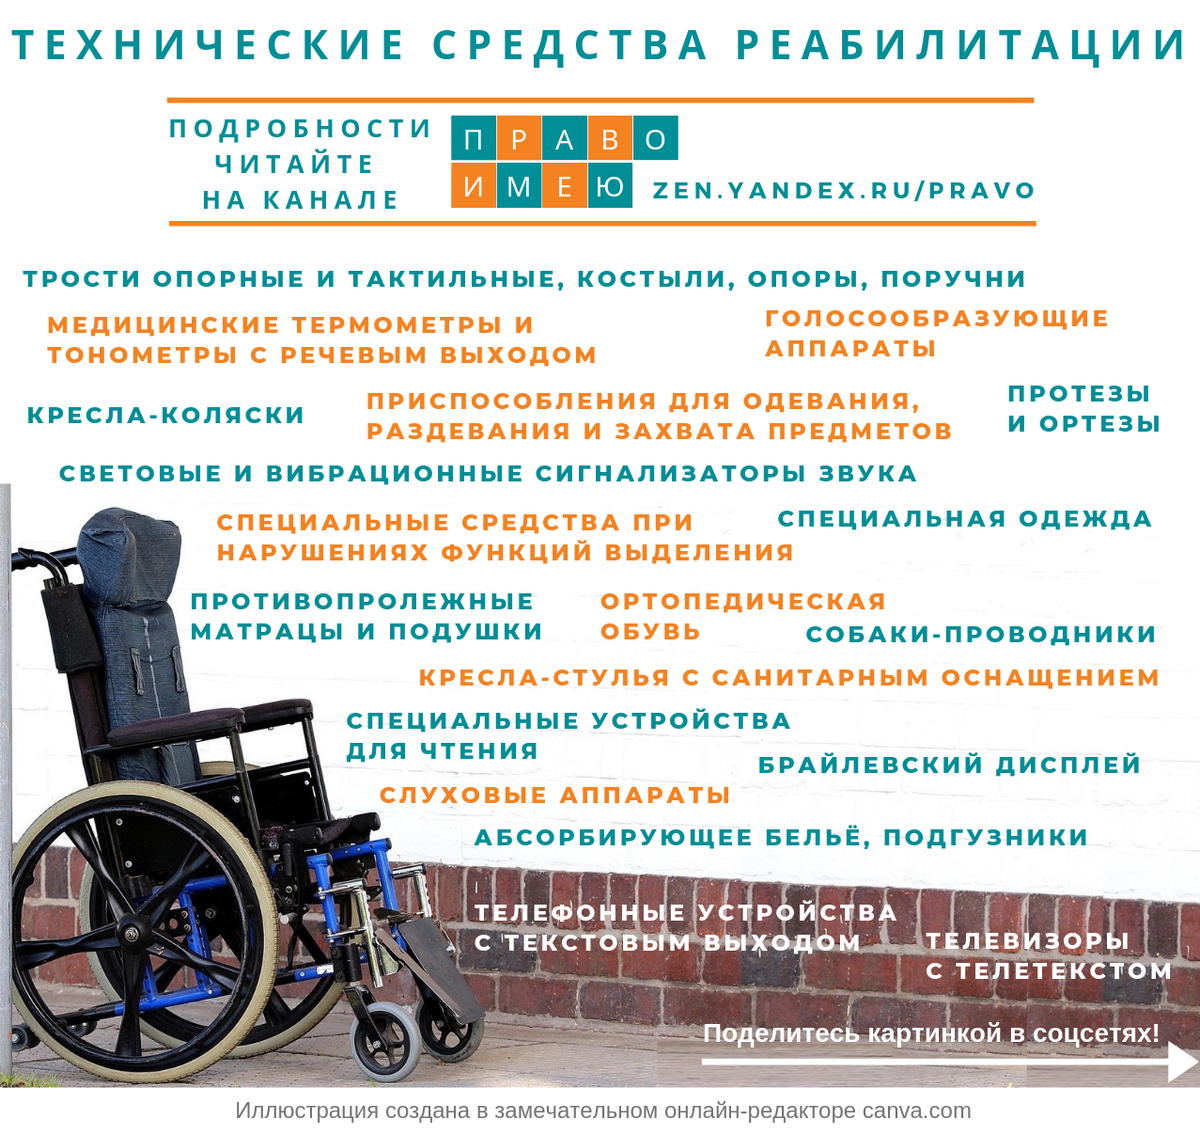 Помощник инвалида 1 группы. Технические средства реабилитации для инвалидов. Texnechiskiya sredstva reabilitasii. Список технические средства реабилитации для инвалидов. Инвалиды 1 группы в колясках.